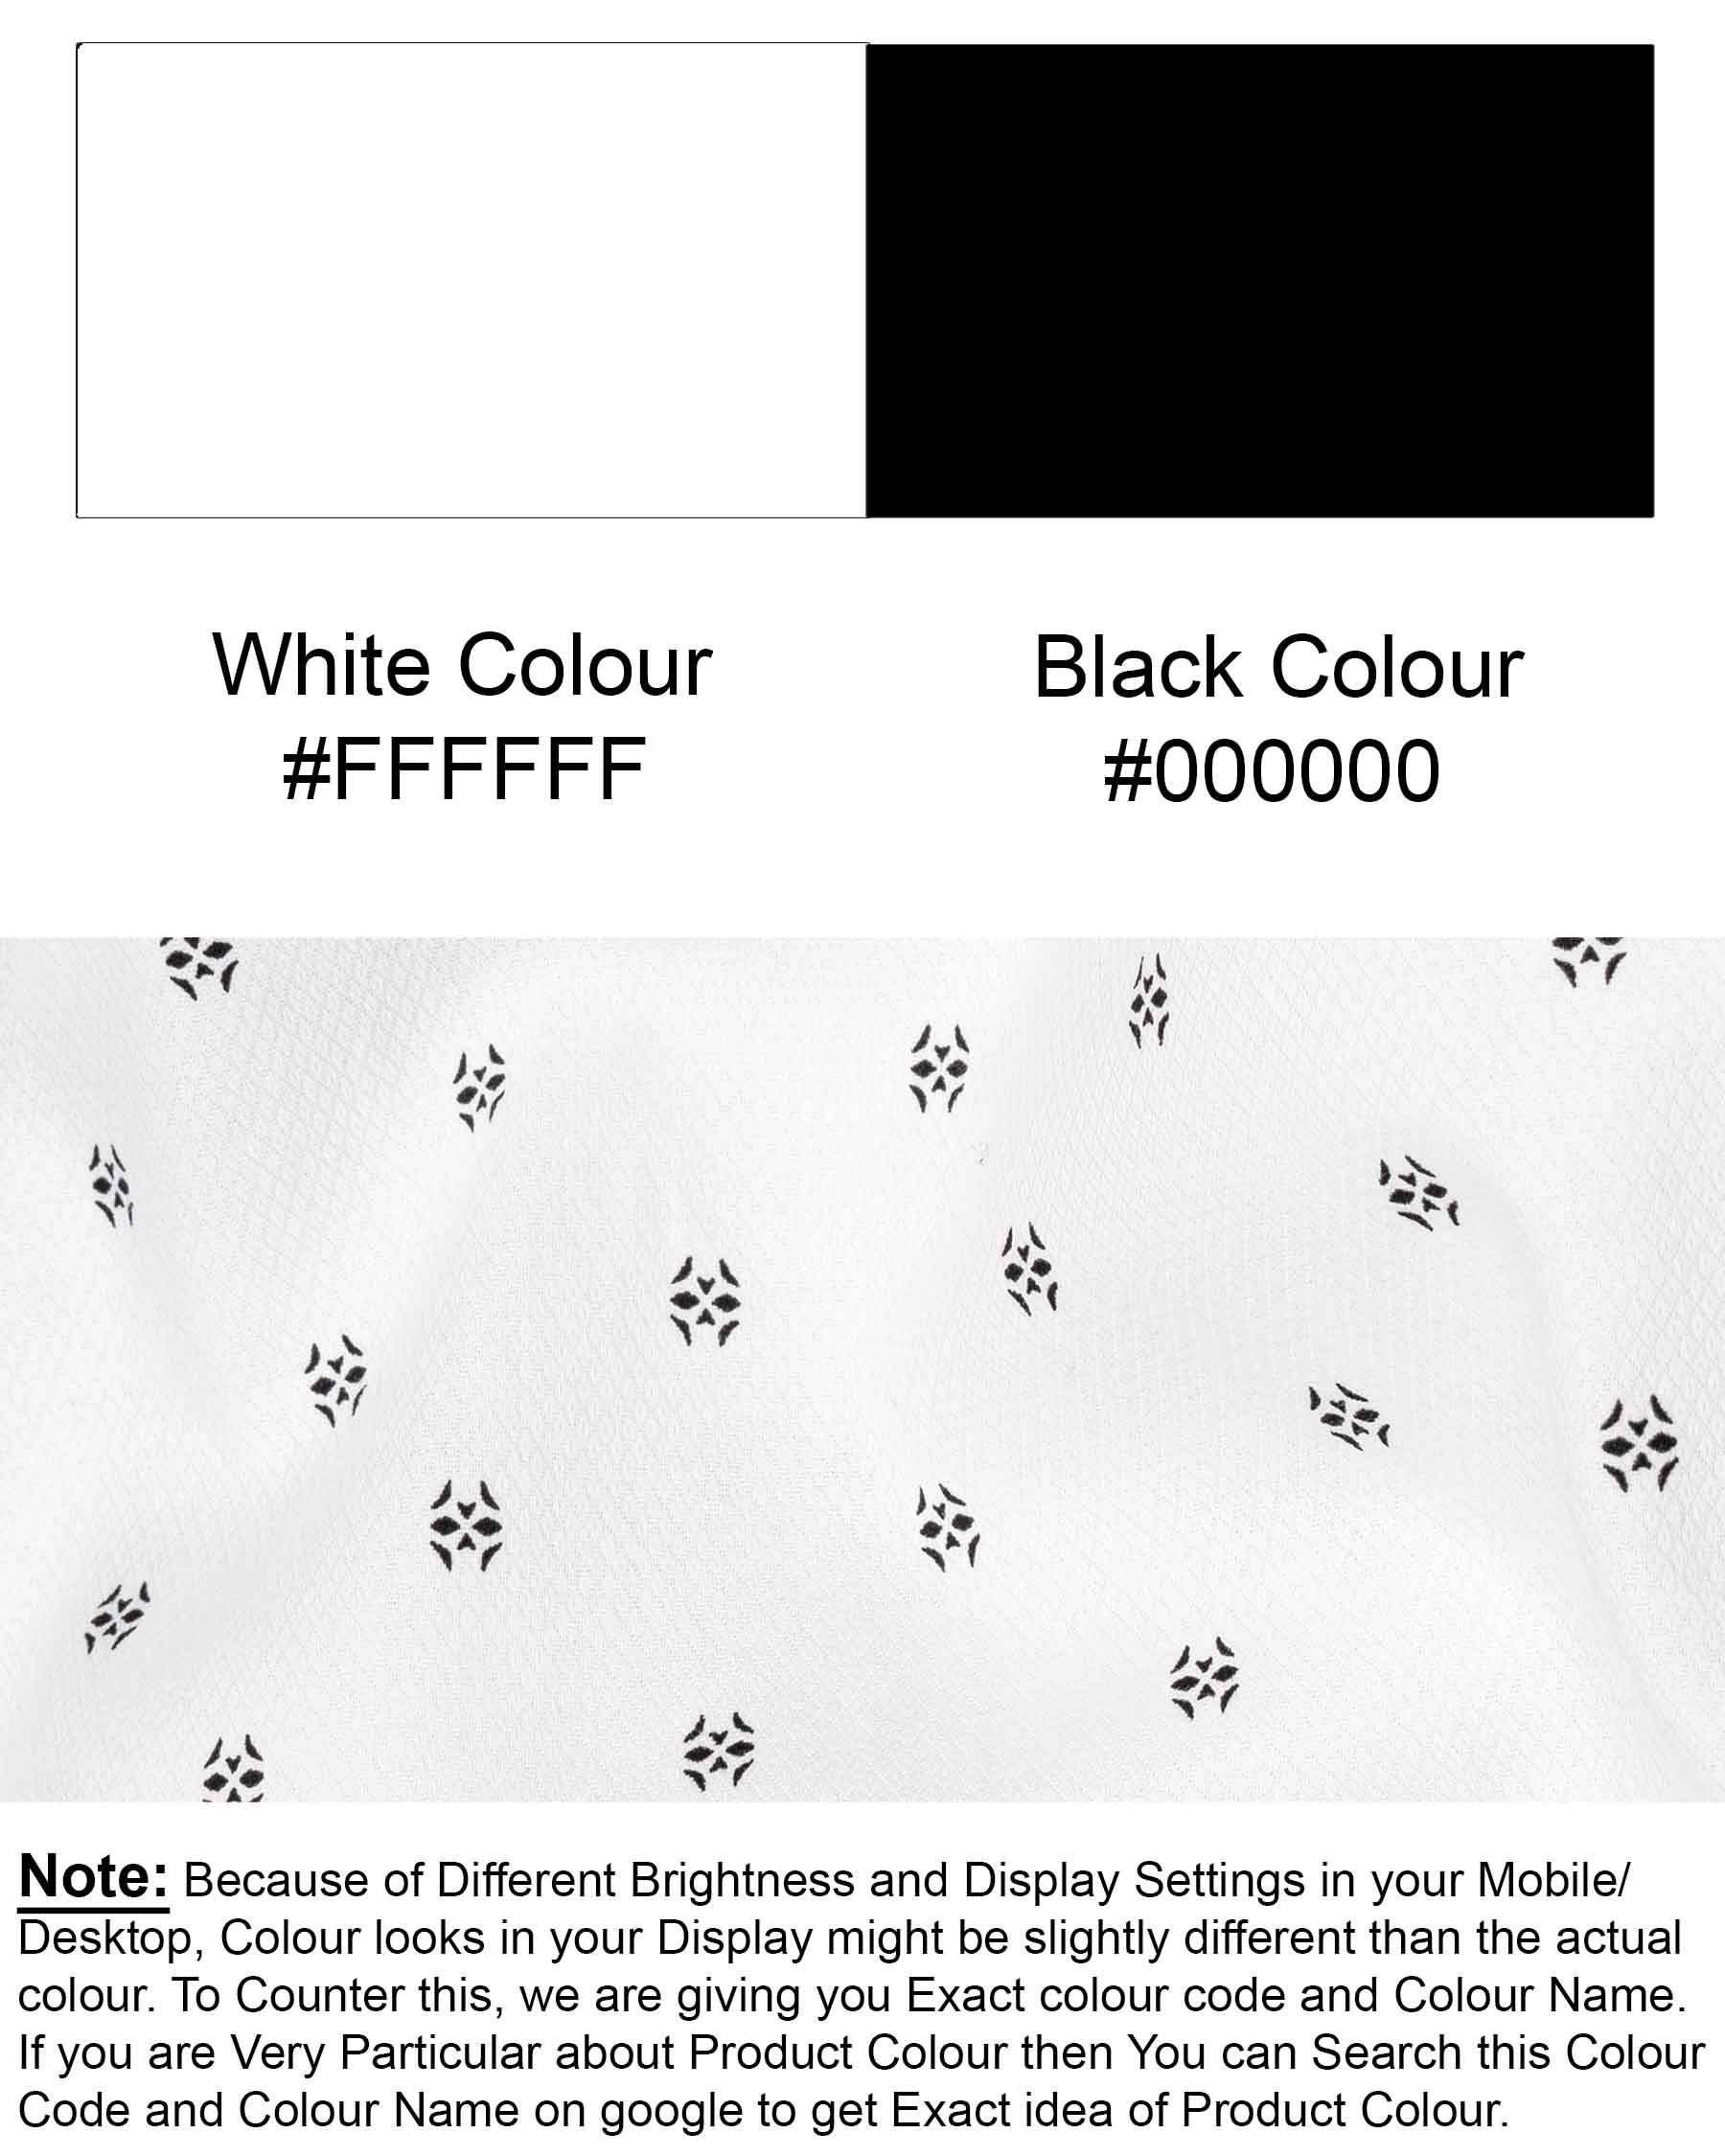 Bright White Printed Dobby Textured Premium Giza Cotton Shirt  6461-BLK-38, 6461-BLK-H-38, 6461-BLK-39, 6461-BLK-H-39, 6461-BLK-40, 6461-BLK-H-40, 6461-BLK-42, 6461-BLK-H-42, 6461-BLK-44, 6461-BLK-H-44, 6461-BLK-46, 6461-BLK-H-46, 6461-BLK-48, 6461-BLK-H-48, 6461-BLK-50, 6461-BLK-H-50, 6461-BLK-52, 6461-BLK-H-52